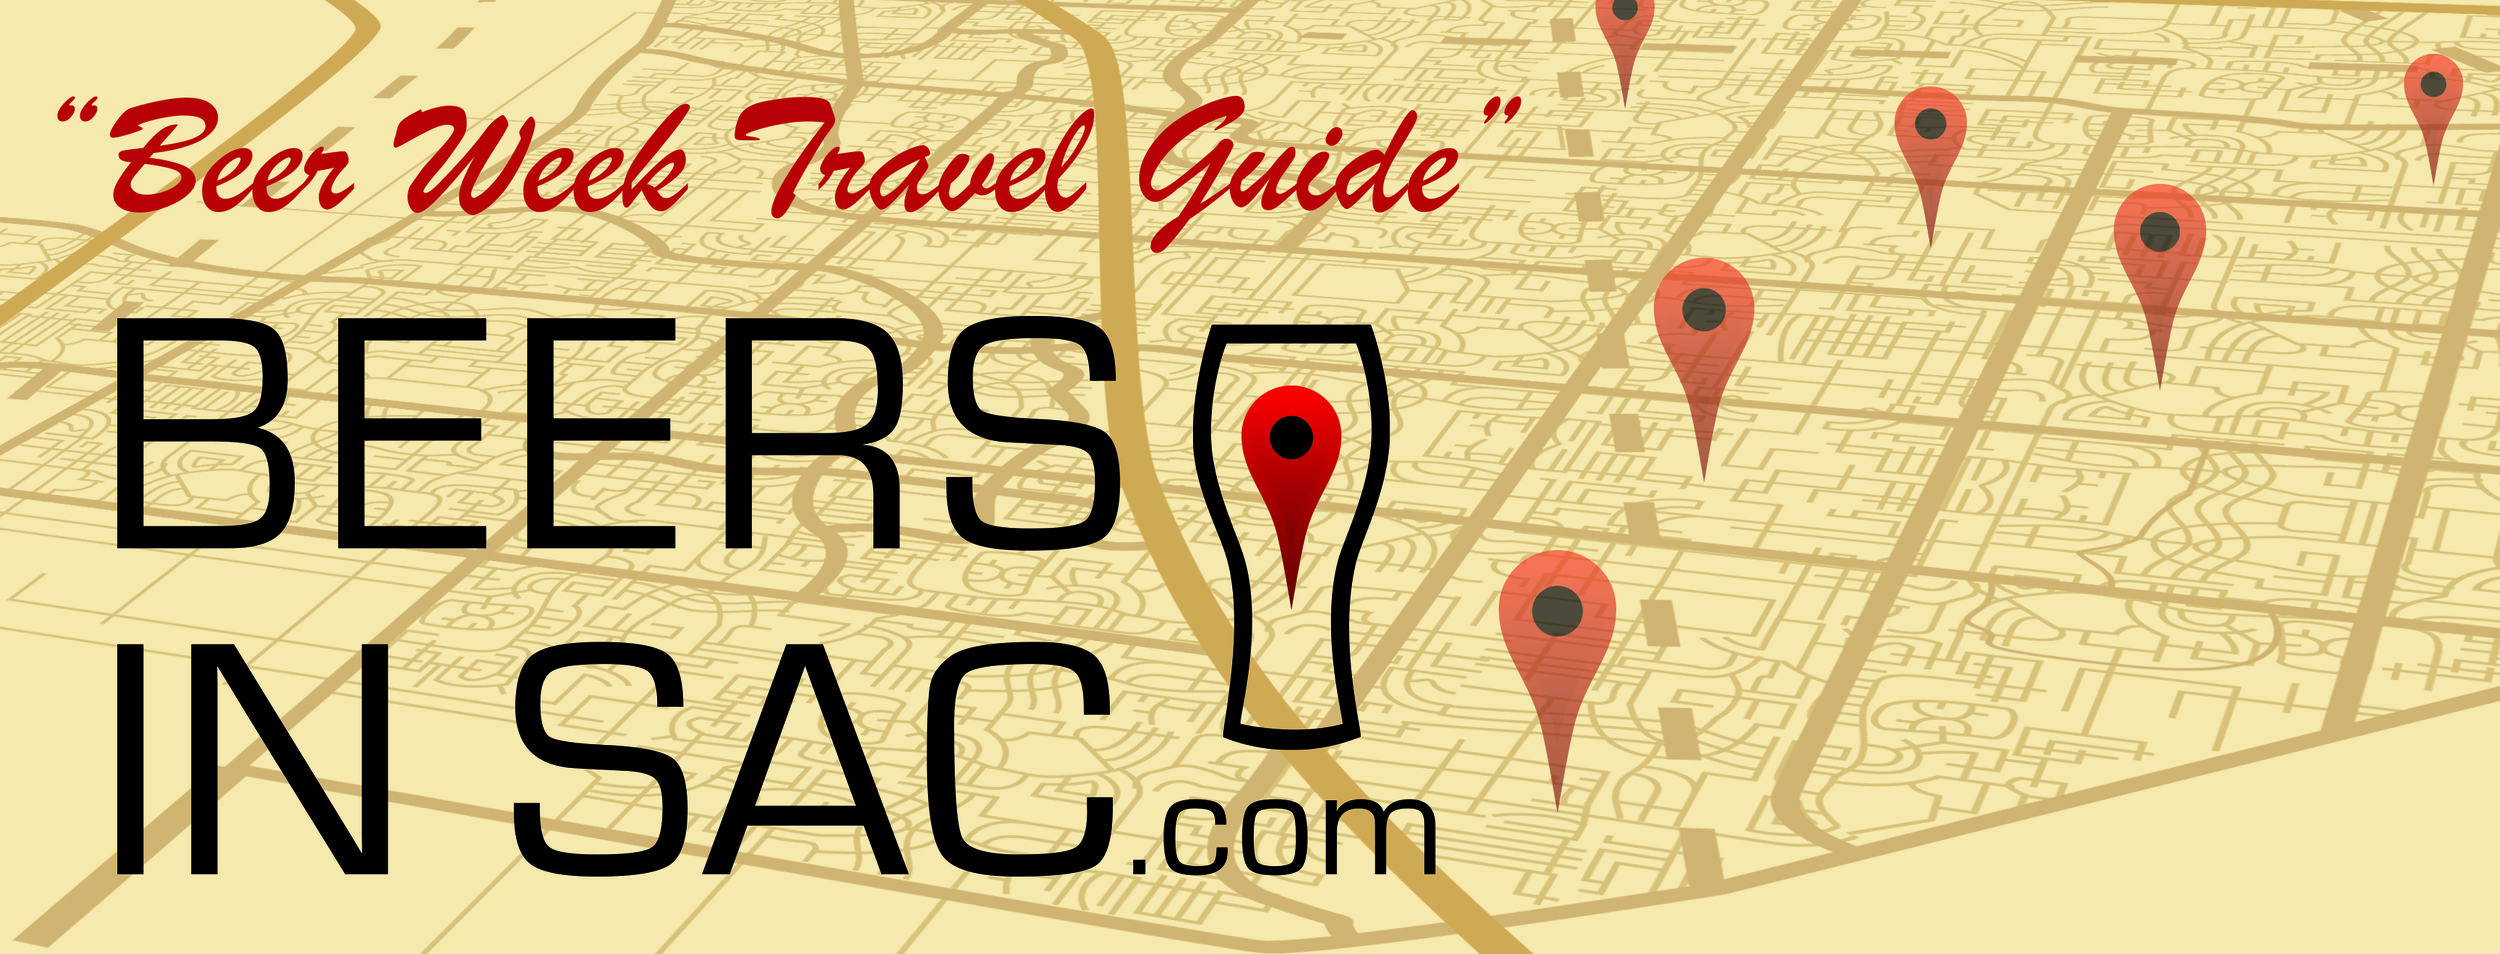 Sacramento Beer Week Travel Guide